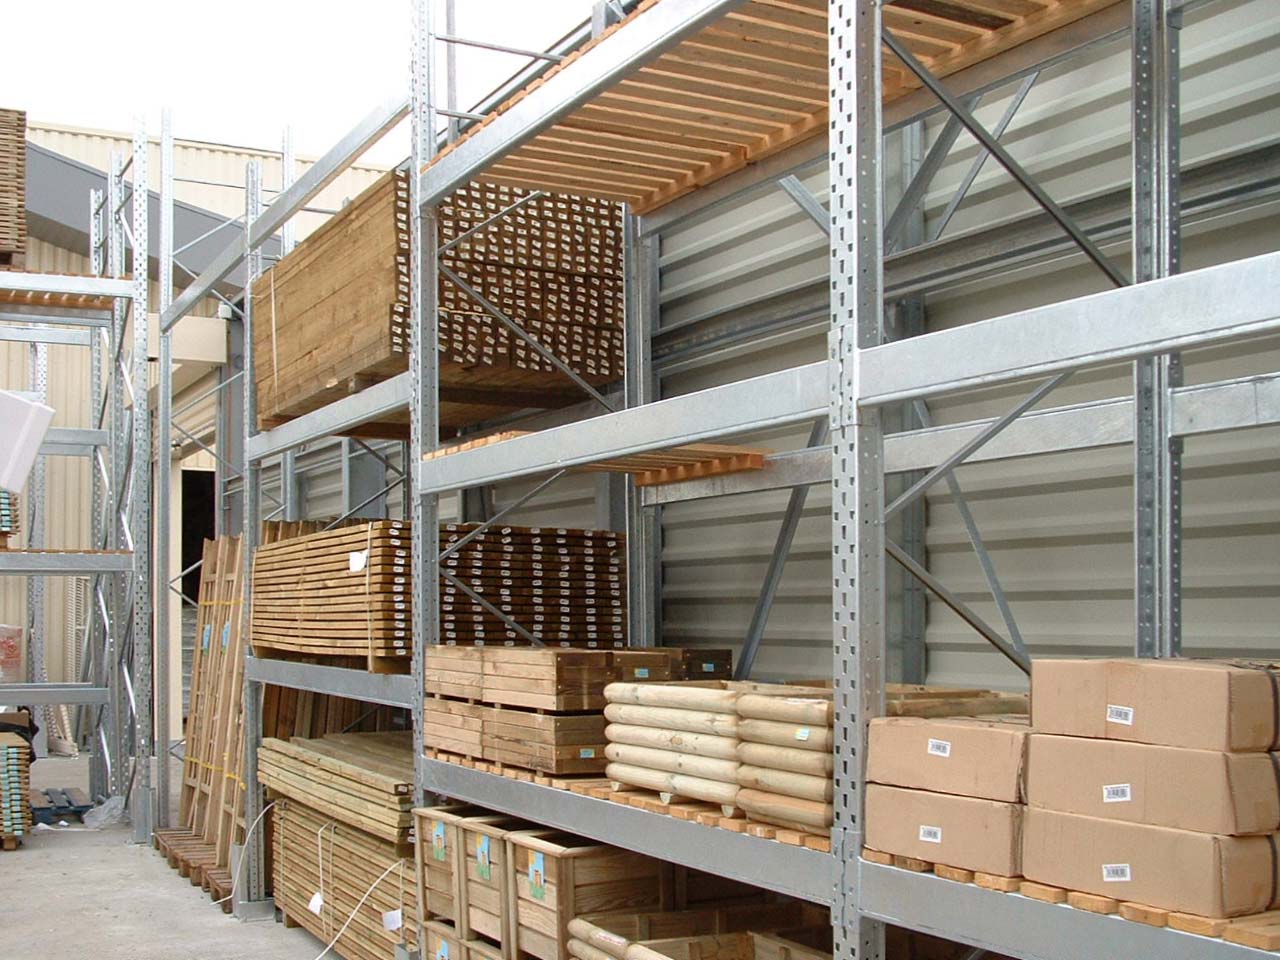 Outdoor pallet storage in galvanised racks